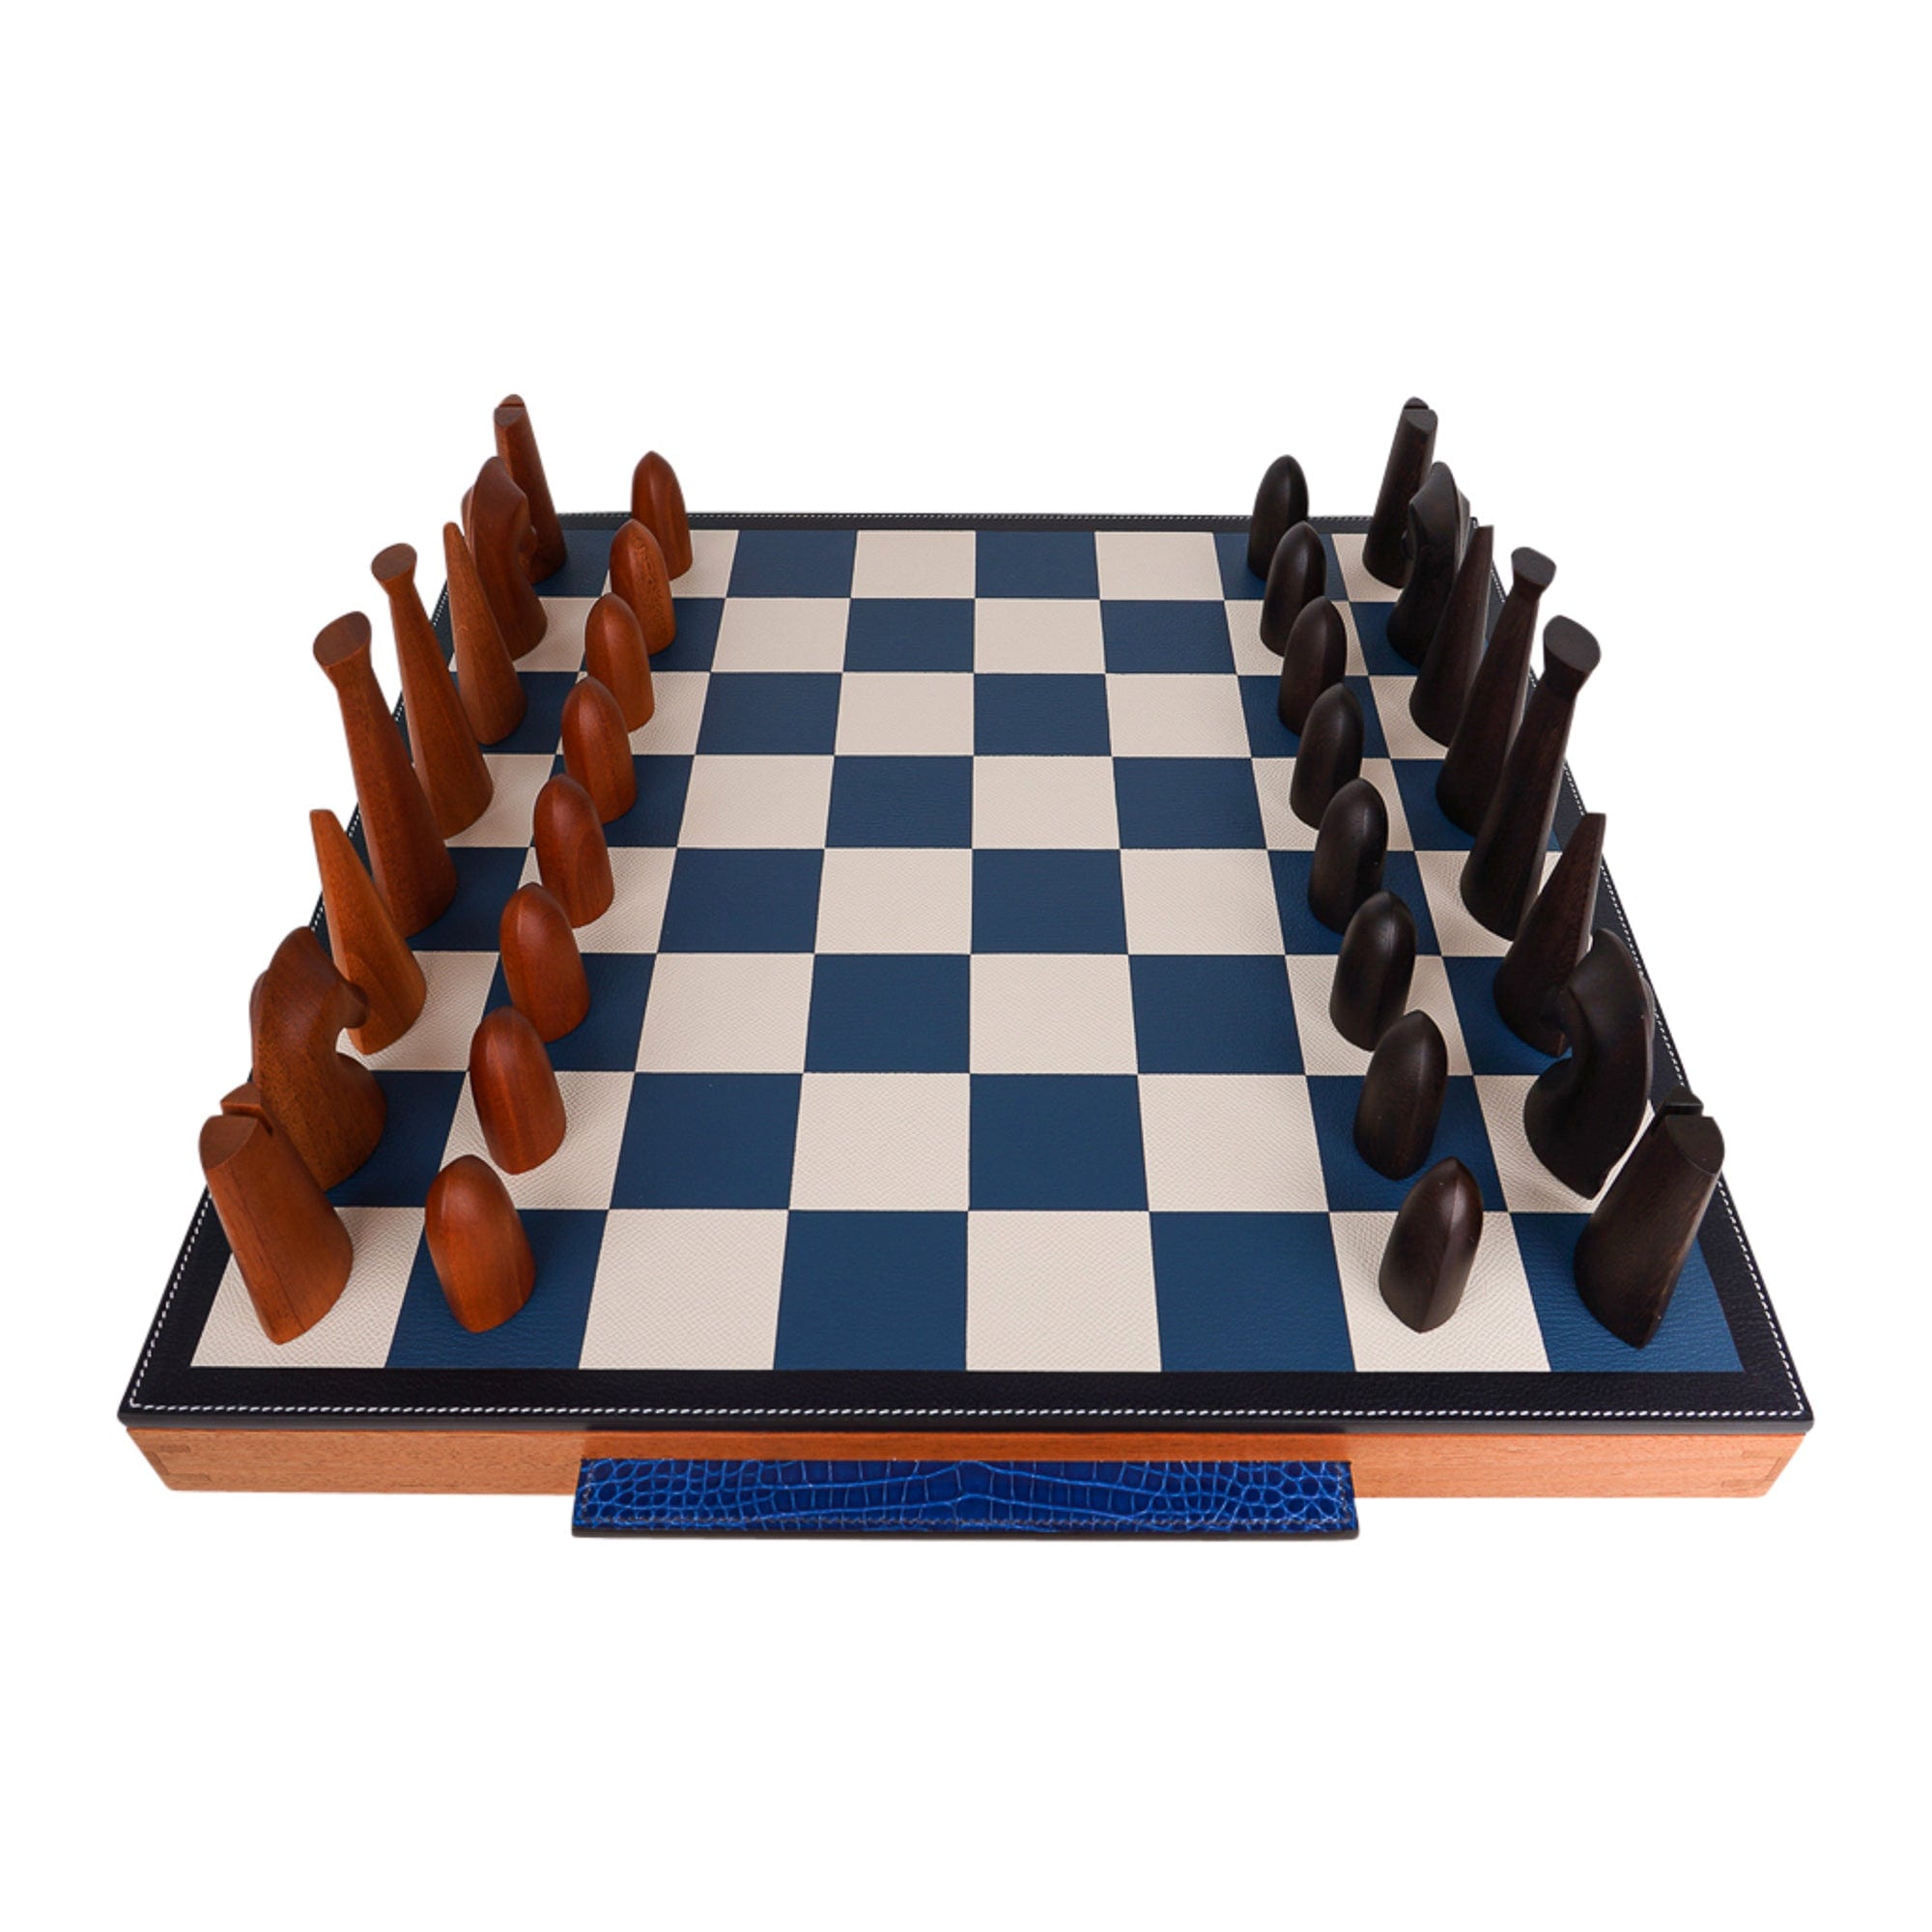 1985 Hermes Chess Set